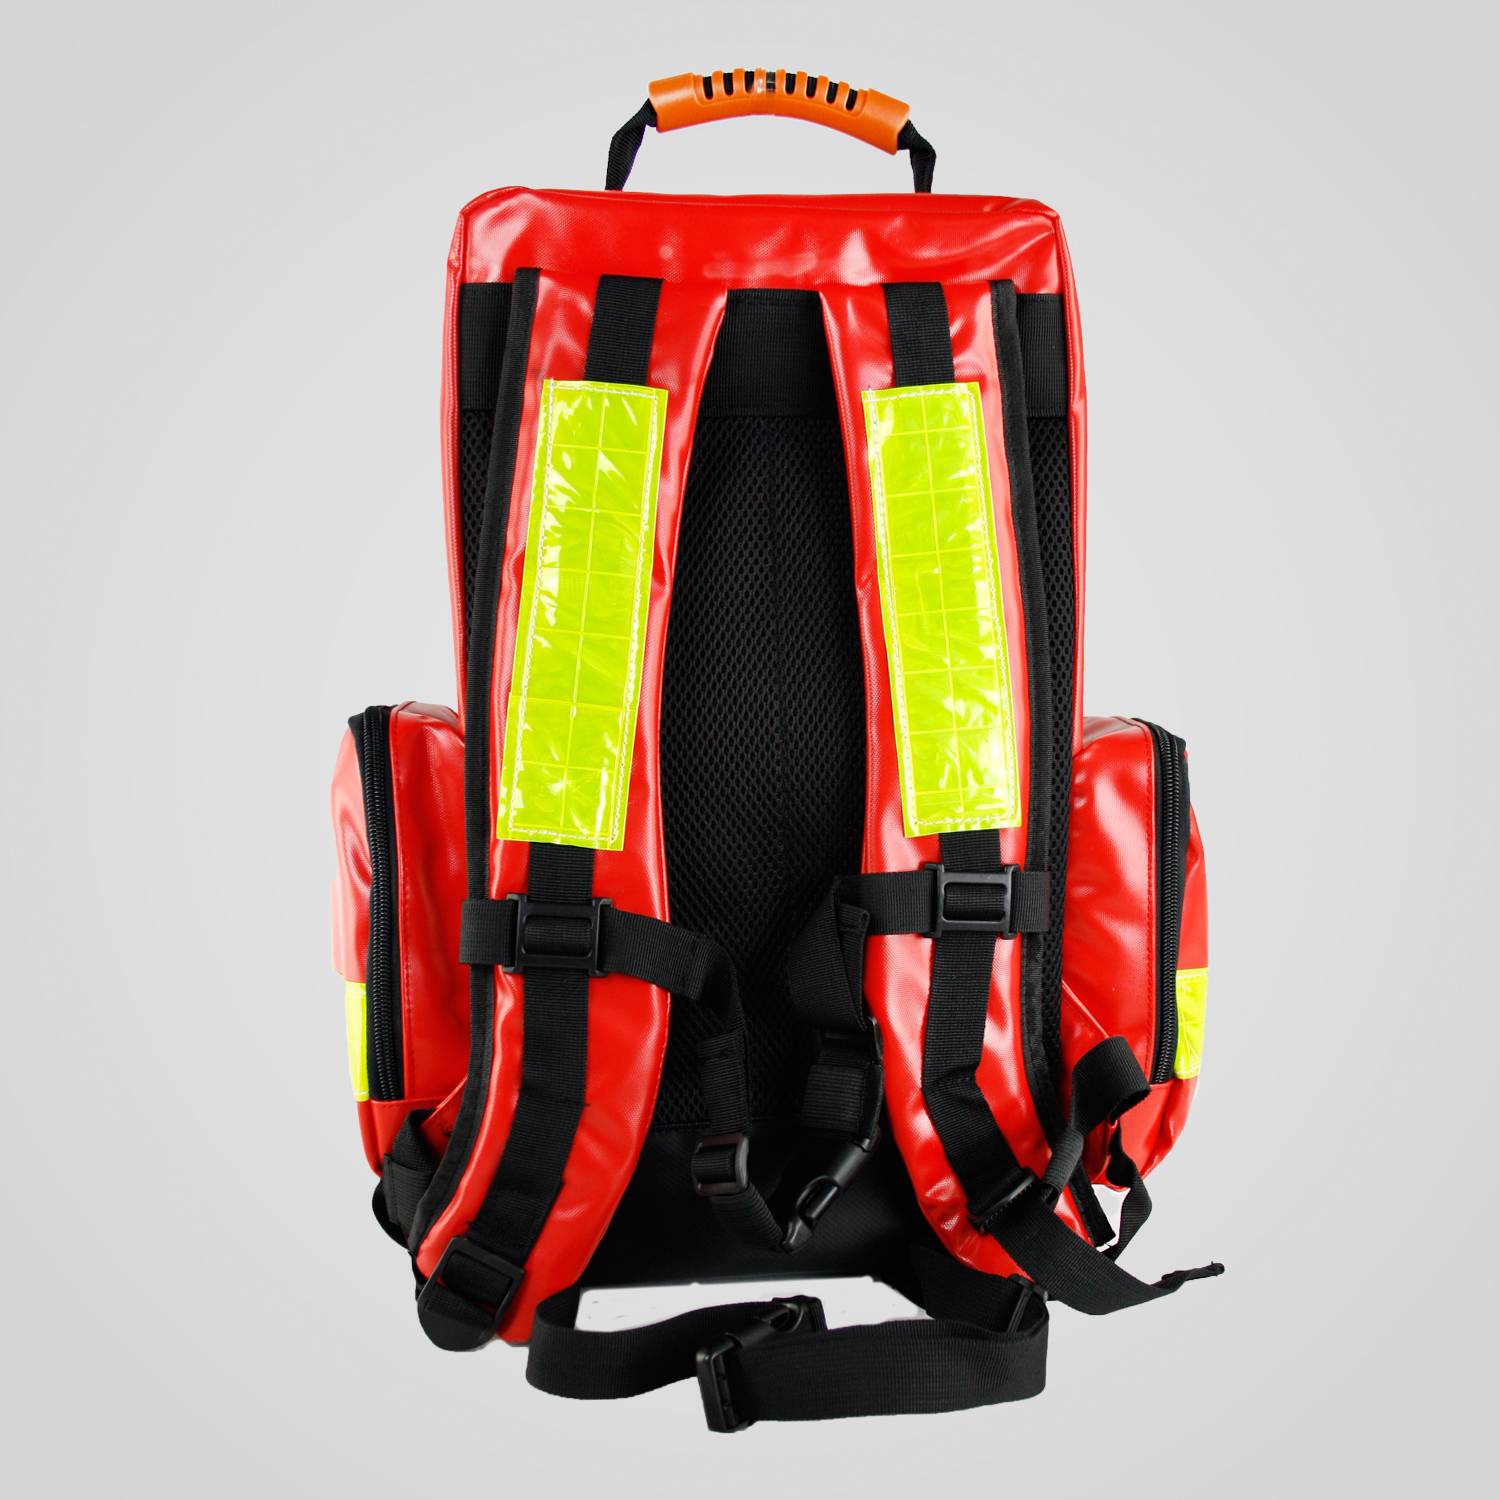 Notfallrucksack für den mobilen AED Defibrillator Einsatz